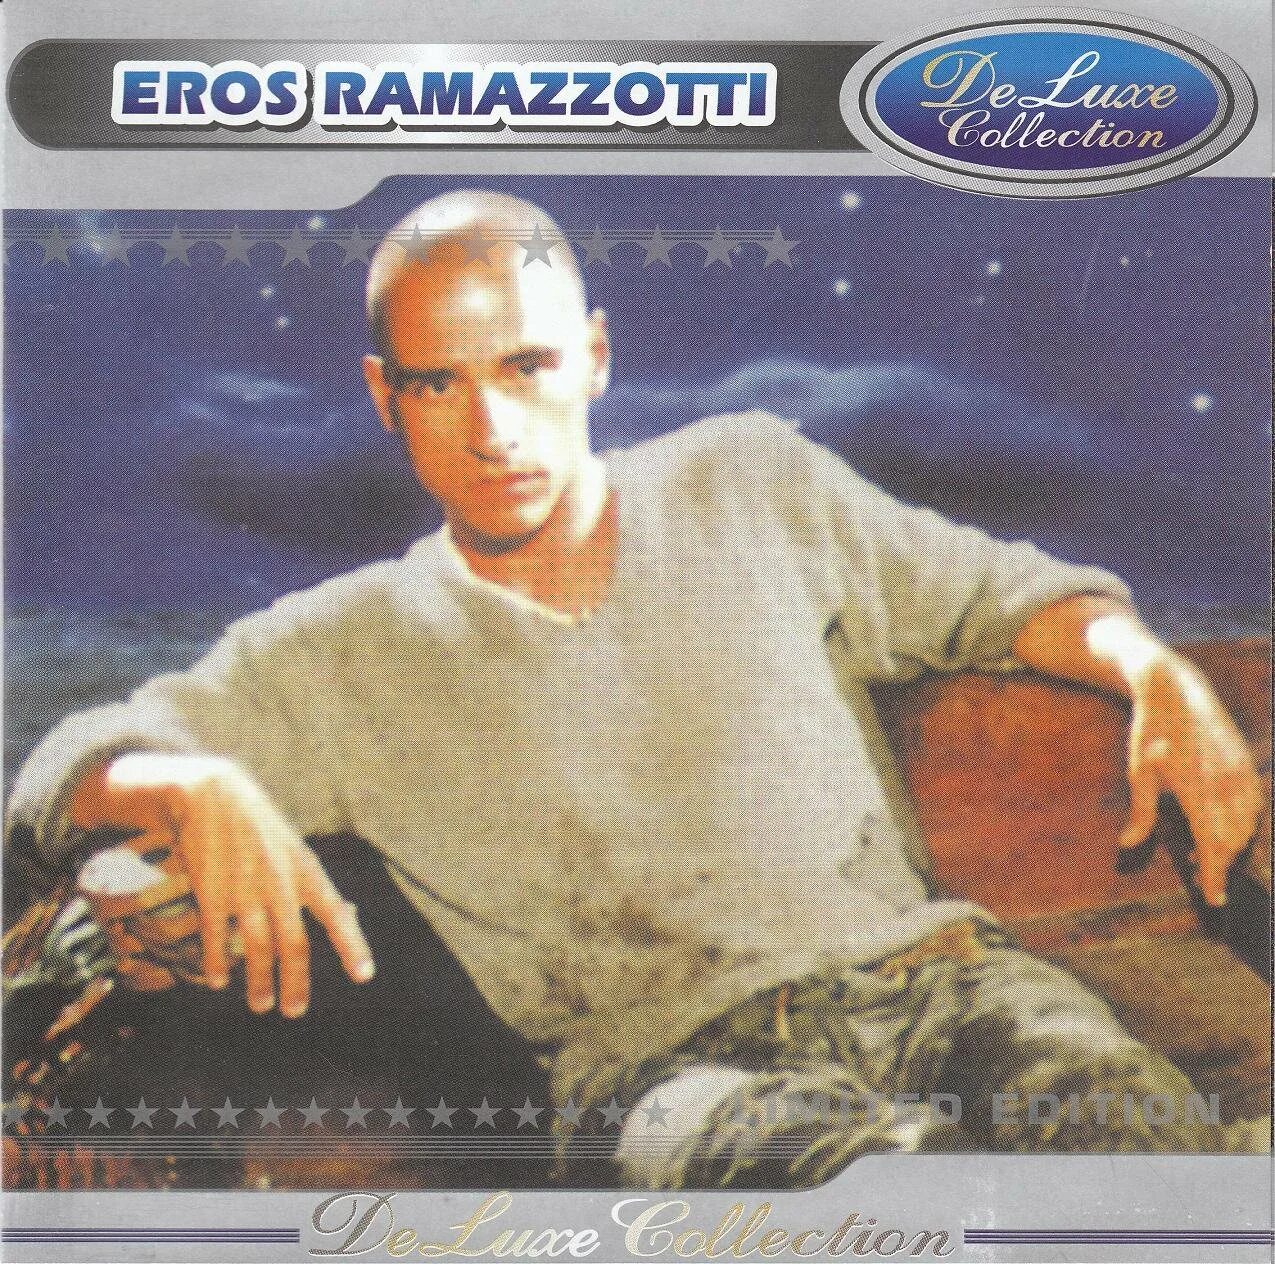 Eros Ramazzotti e2 обложка. Эрос Рамазотти обложки. Эрос Рамаззотти альбомы. Эрос Лучано Уолтер Рамаццотти.